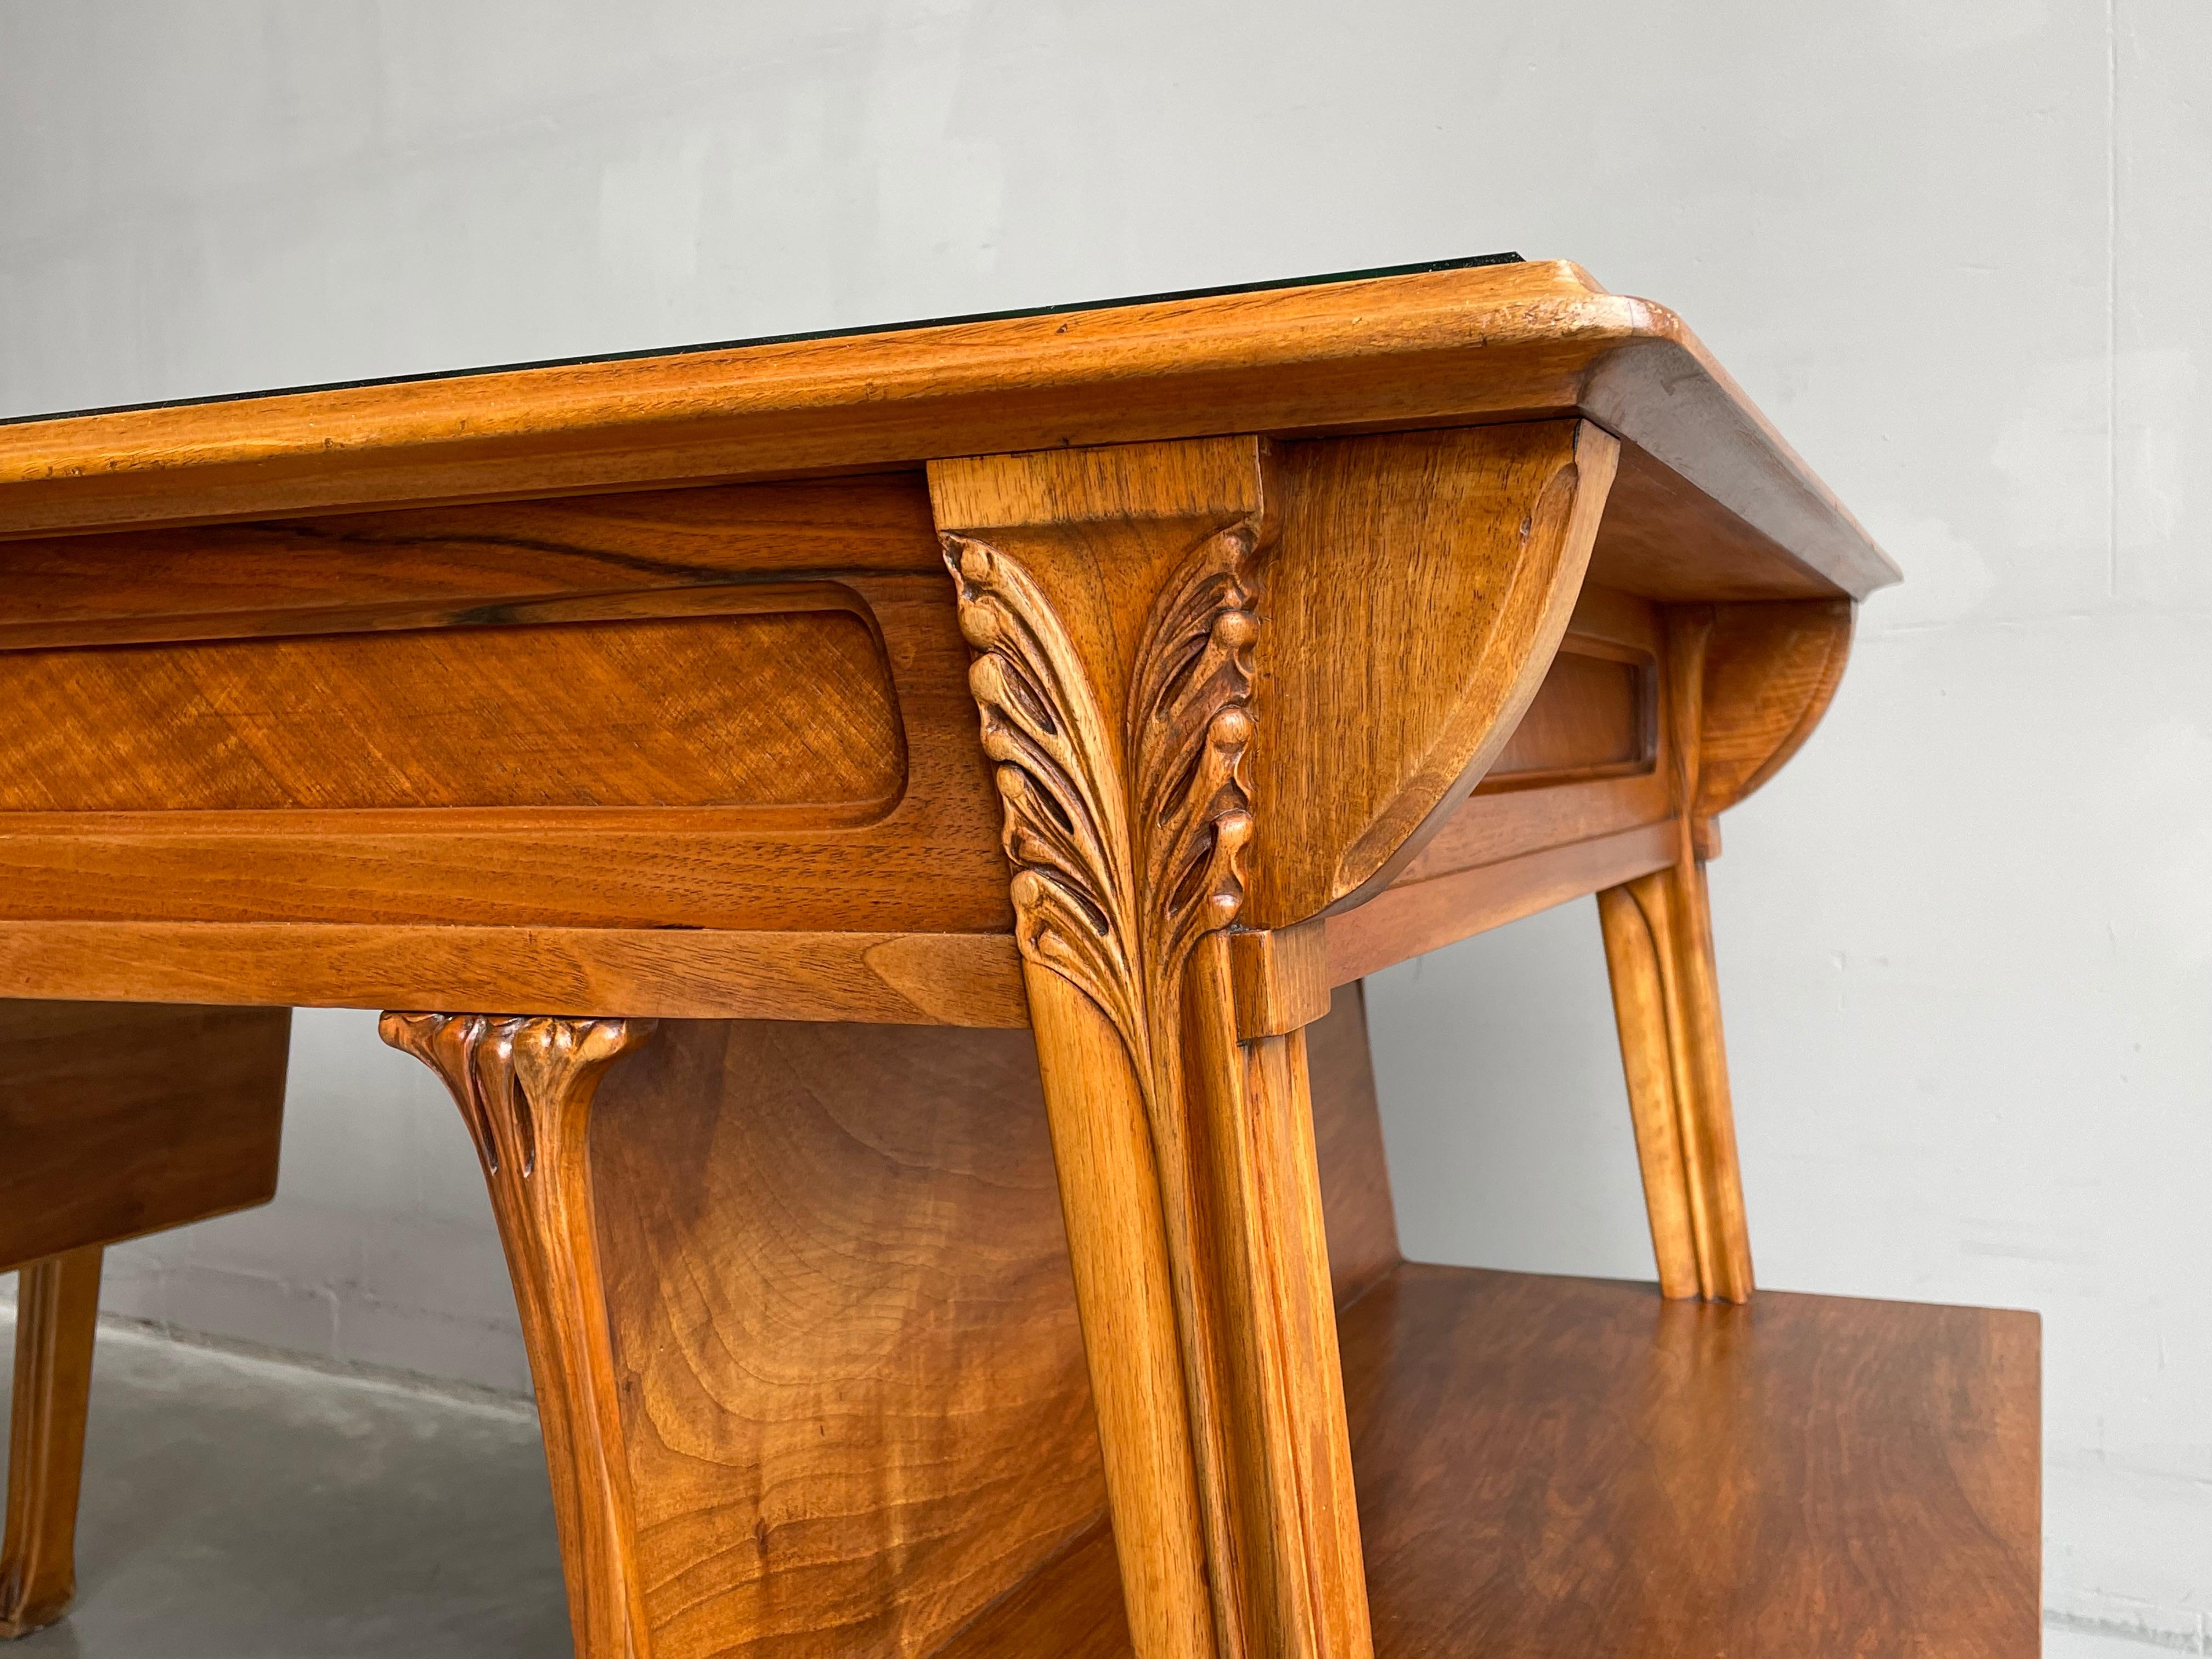 Important Louis Majorelle Art Nouveau Desk and Chair, Bookcase & Filing Cabinet For Sale 8